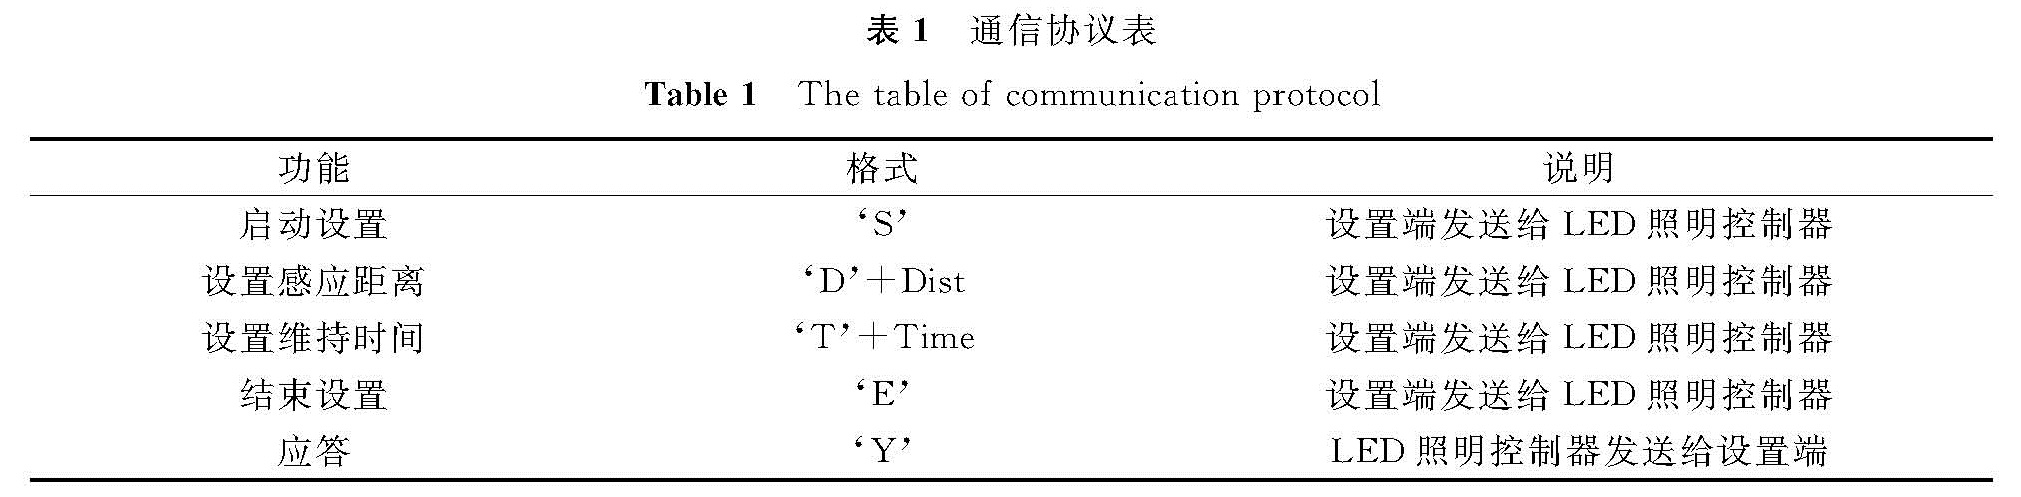 表1 通信协议表<br/>Table 1 The table of communication protocol